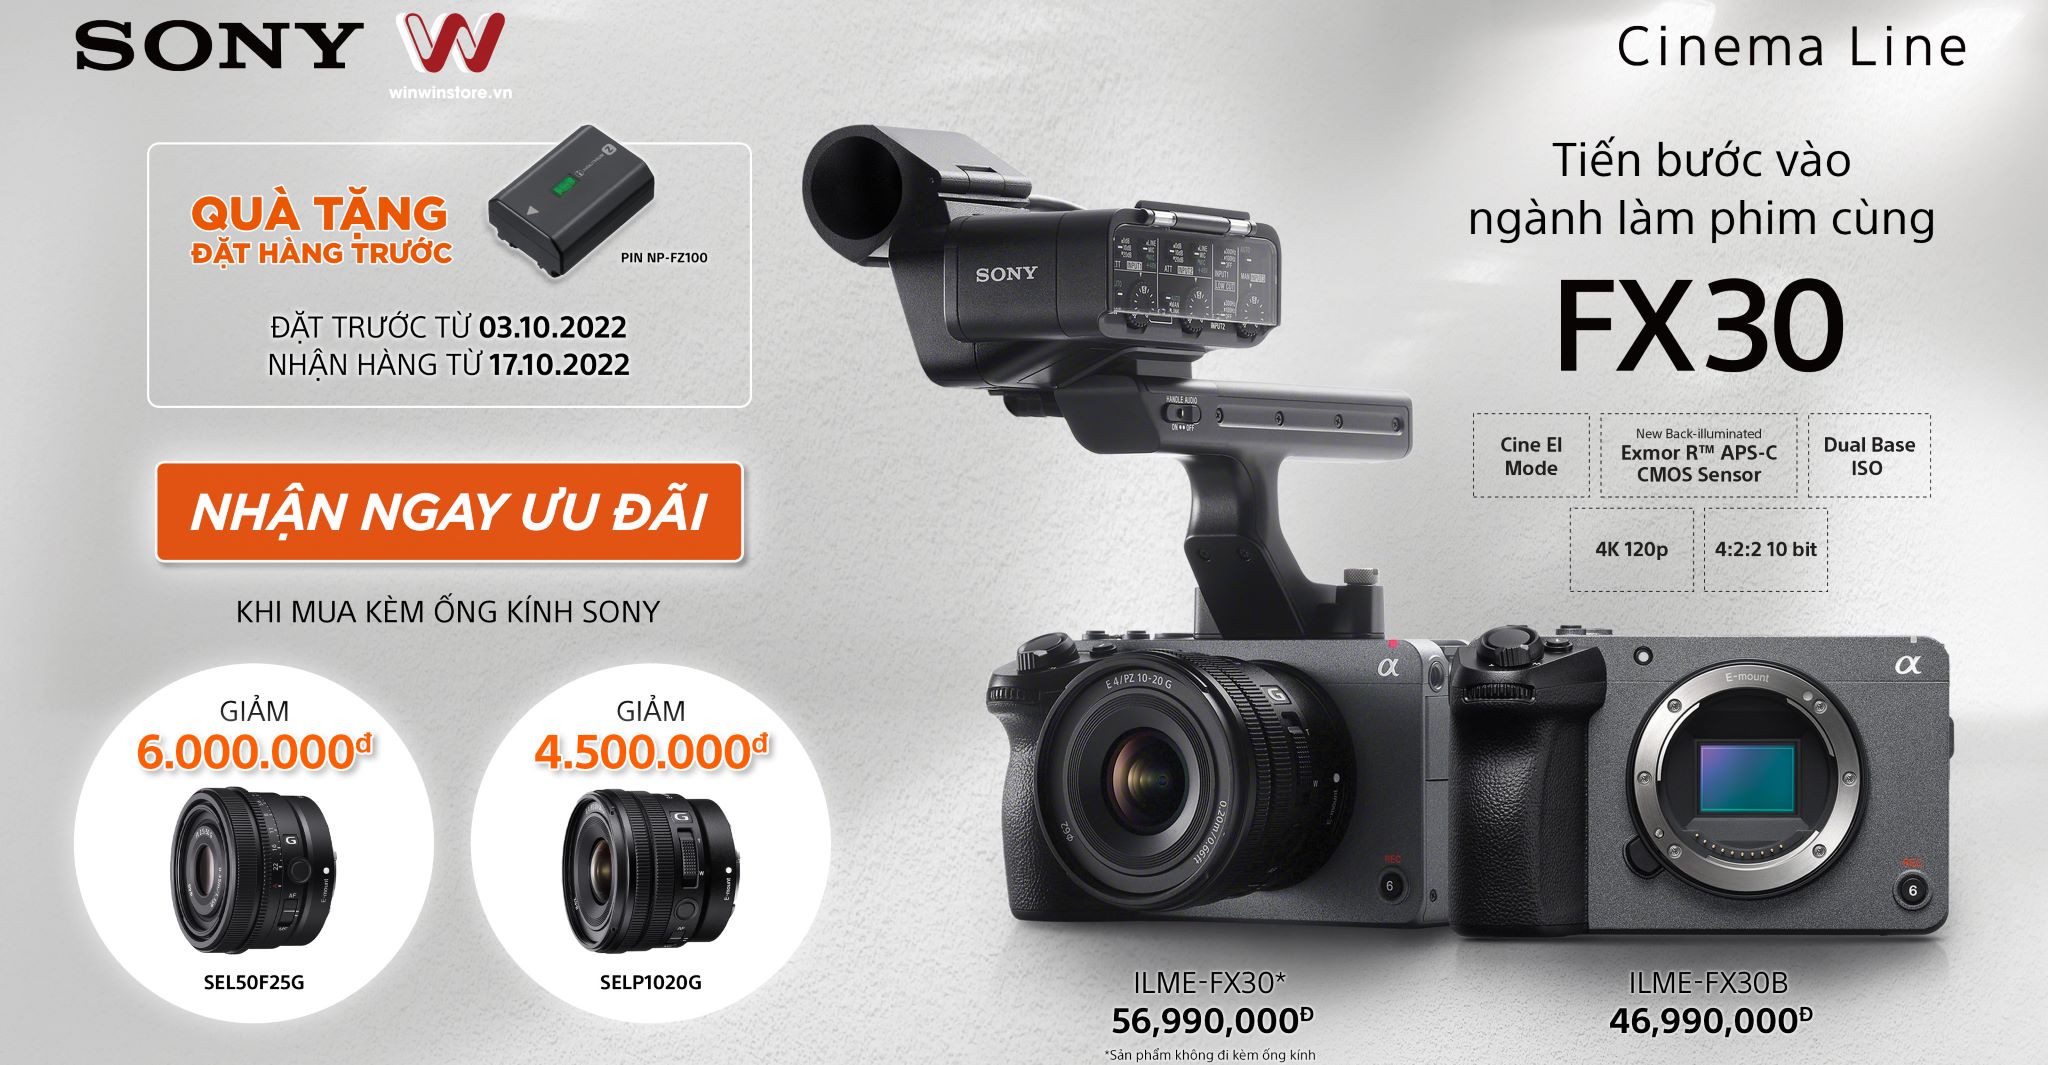 Đặt trước máy quay Sony FX30, nhận ngay quà và ưu đãi khi mua kèm ống kính Sony